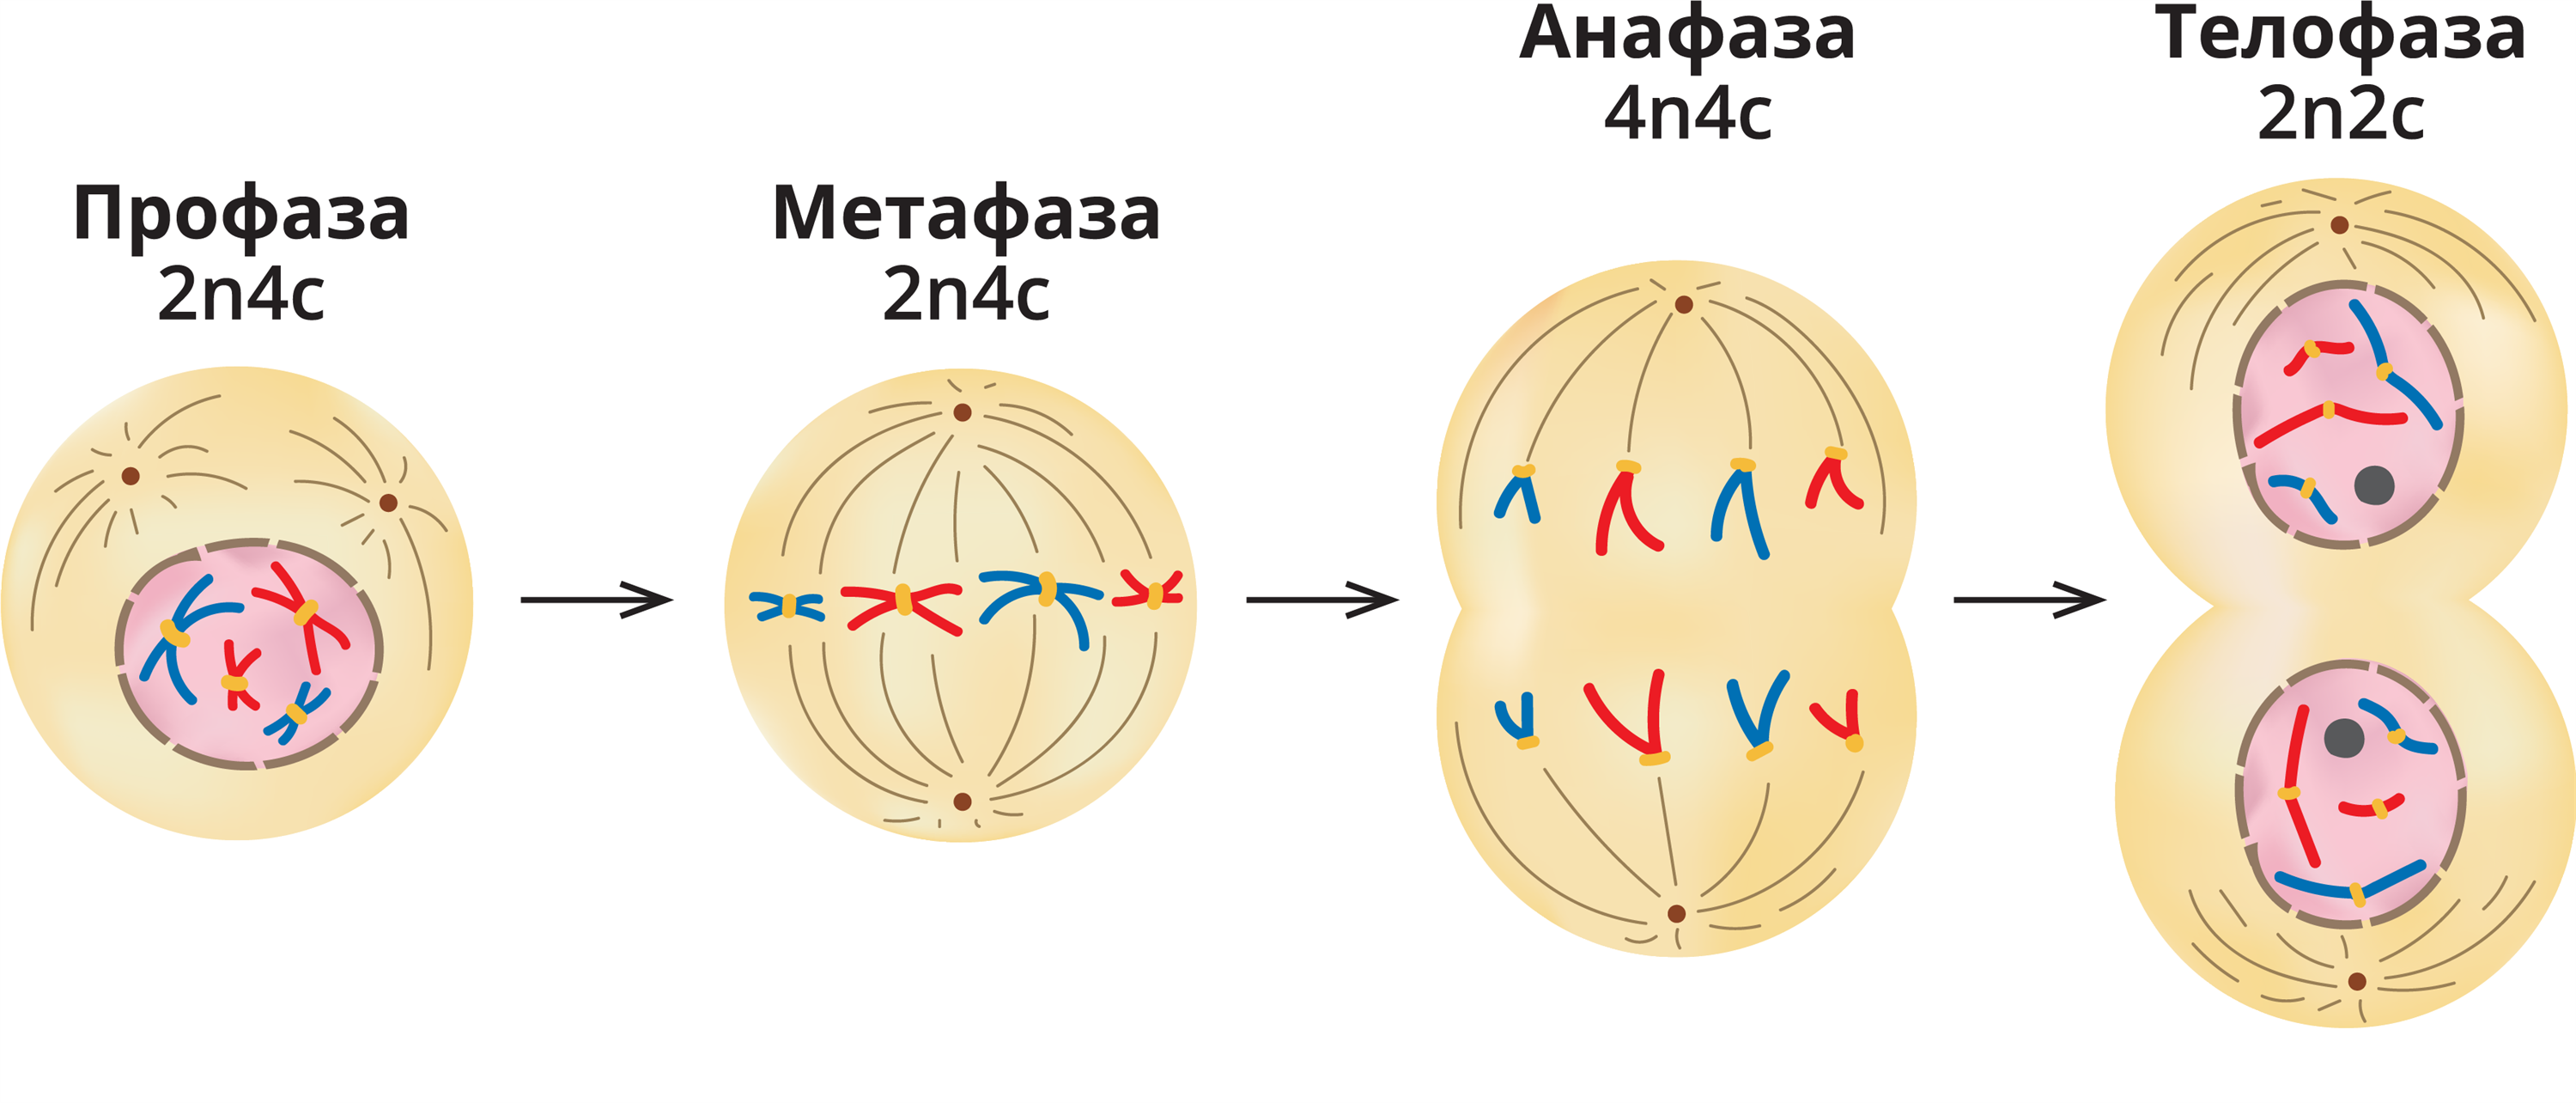 Начало митоза сколько хромосом. Фазы деления клетки митоз рисунок. Фазы митоза схема. Профаза метафаза. Телофаза митоза.